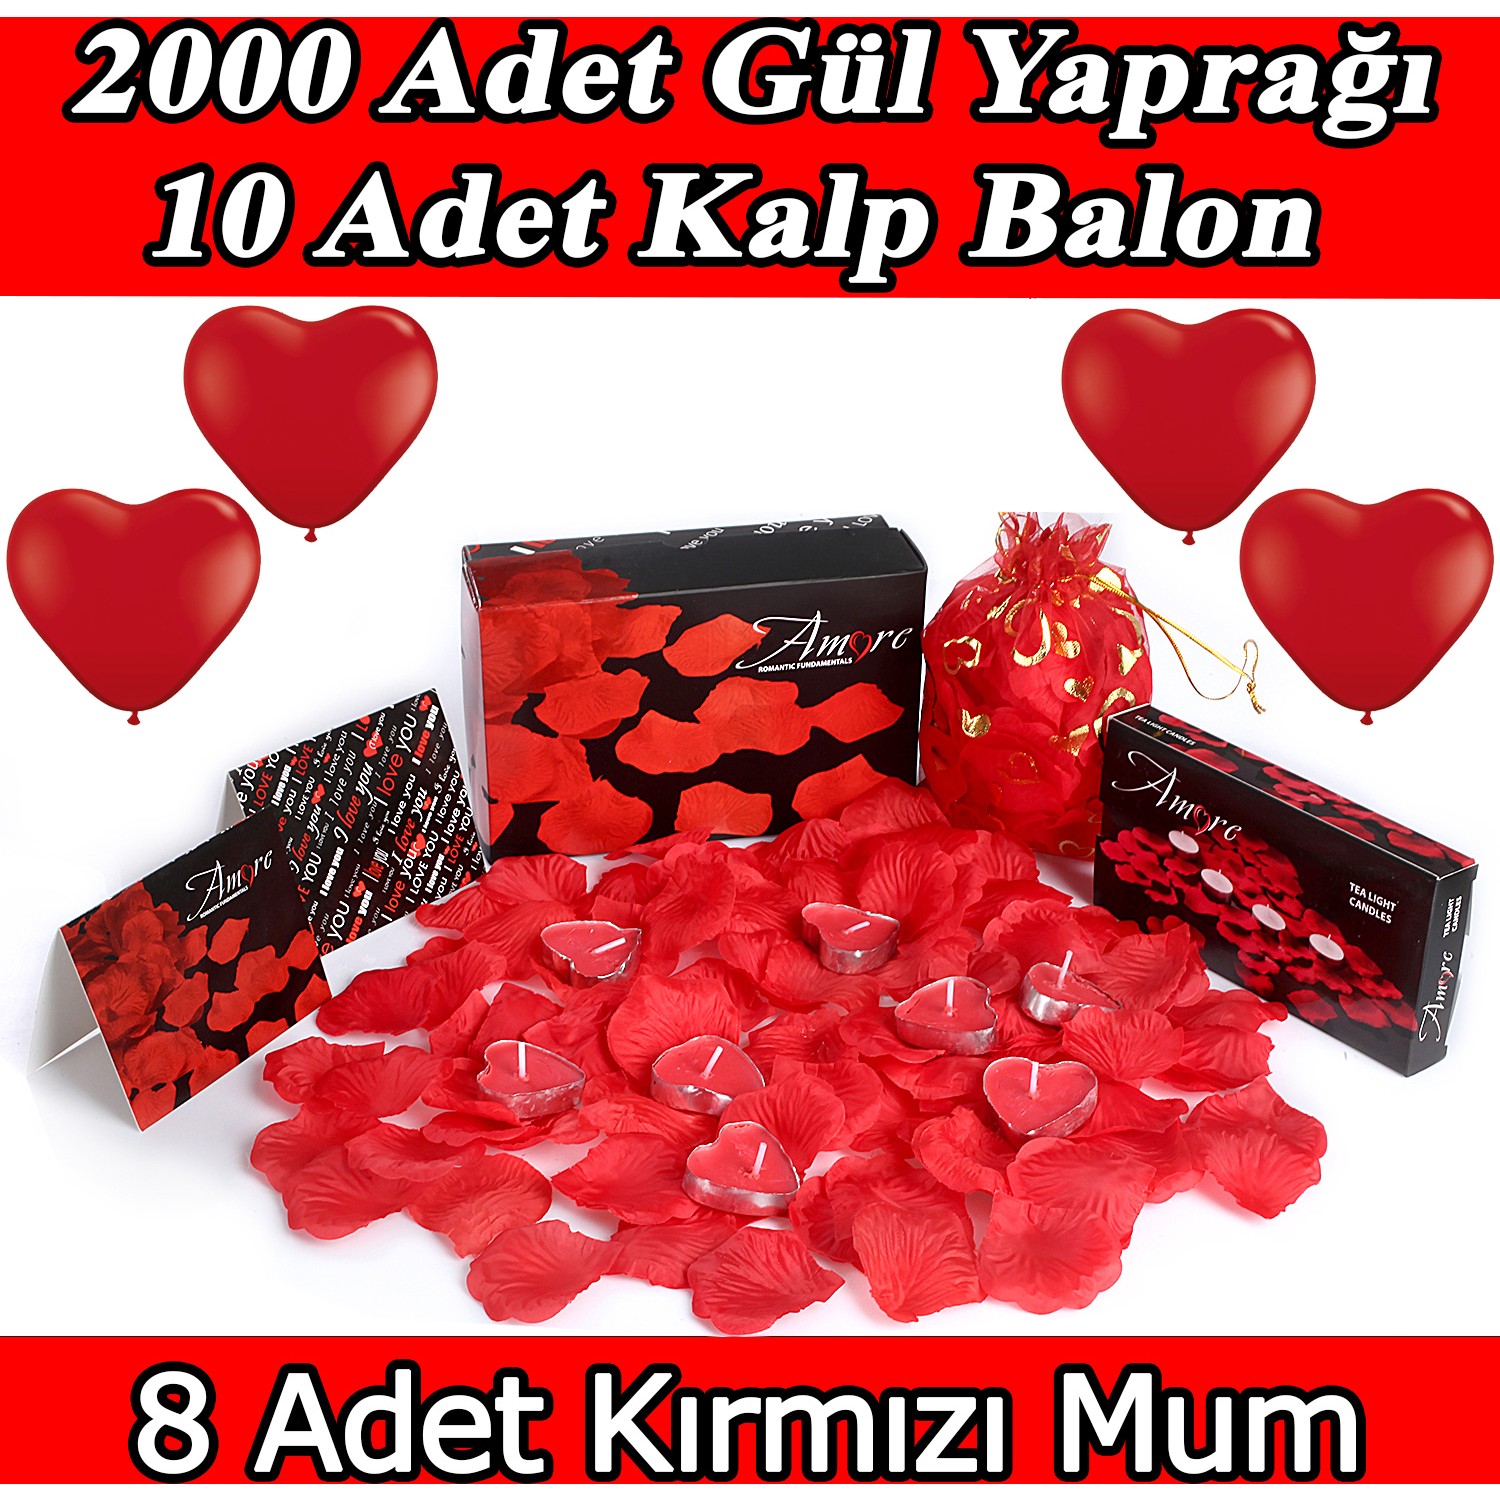 Chavin 2000 Adet Gül Yaprağı Gül Yaprakları Mum Kalp Balon Fiyatı 